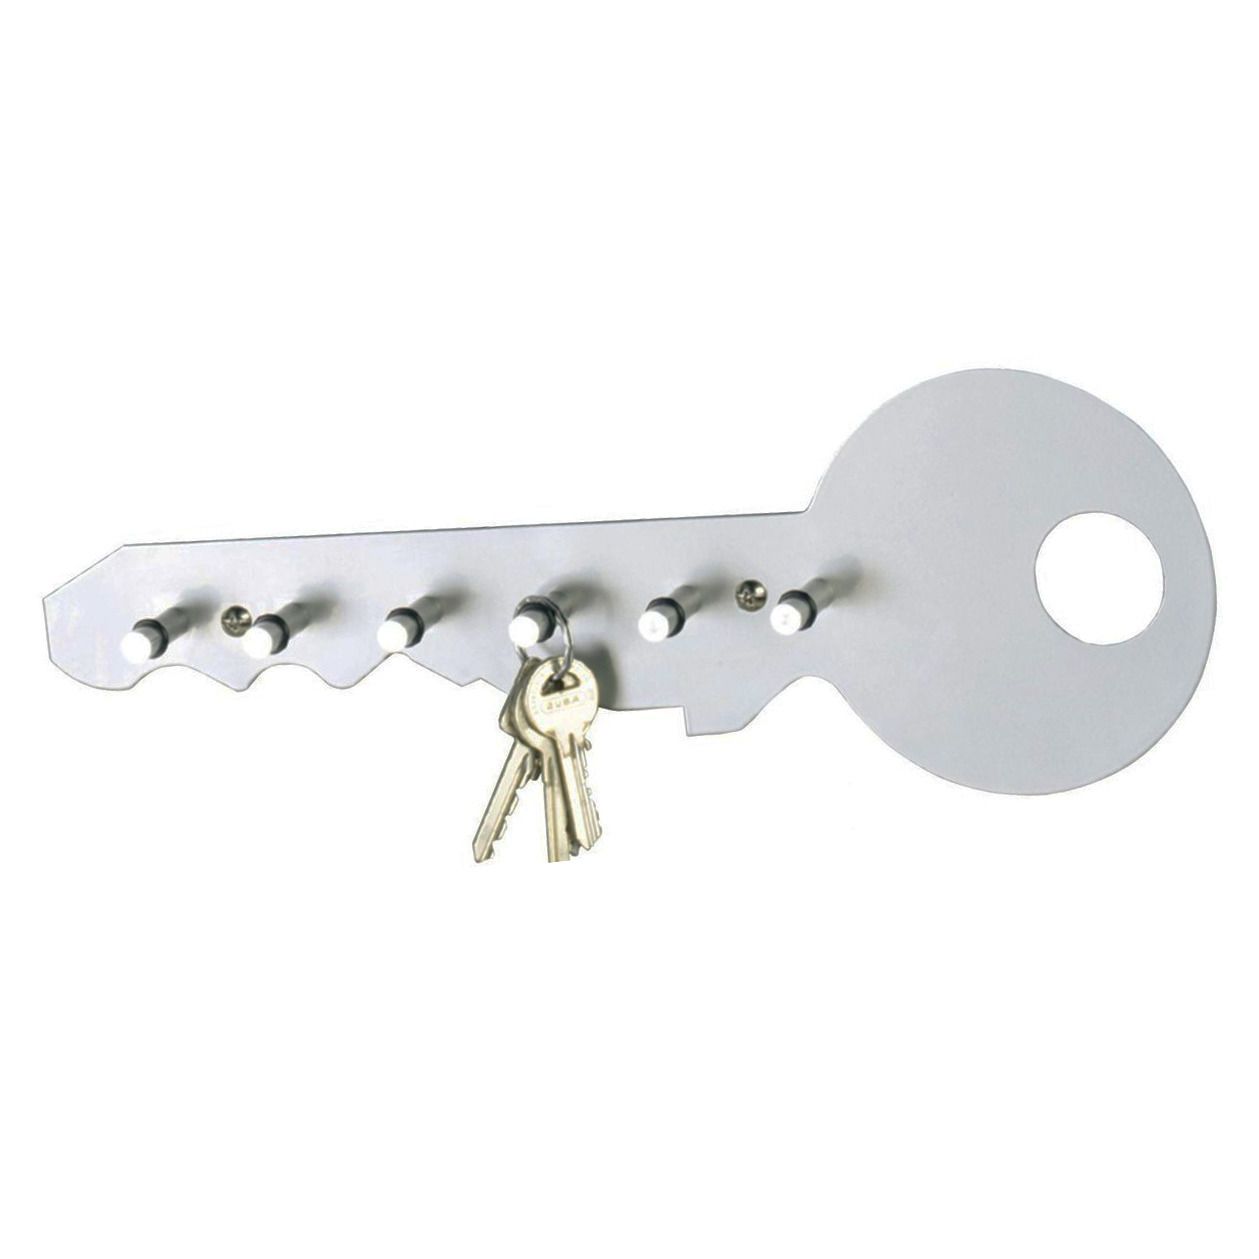 Stříbrný věšák pro zavěšení klíčů z hliníku, 35x12x4 cm, ZELLER - EMAKO.CZ s.r.o.